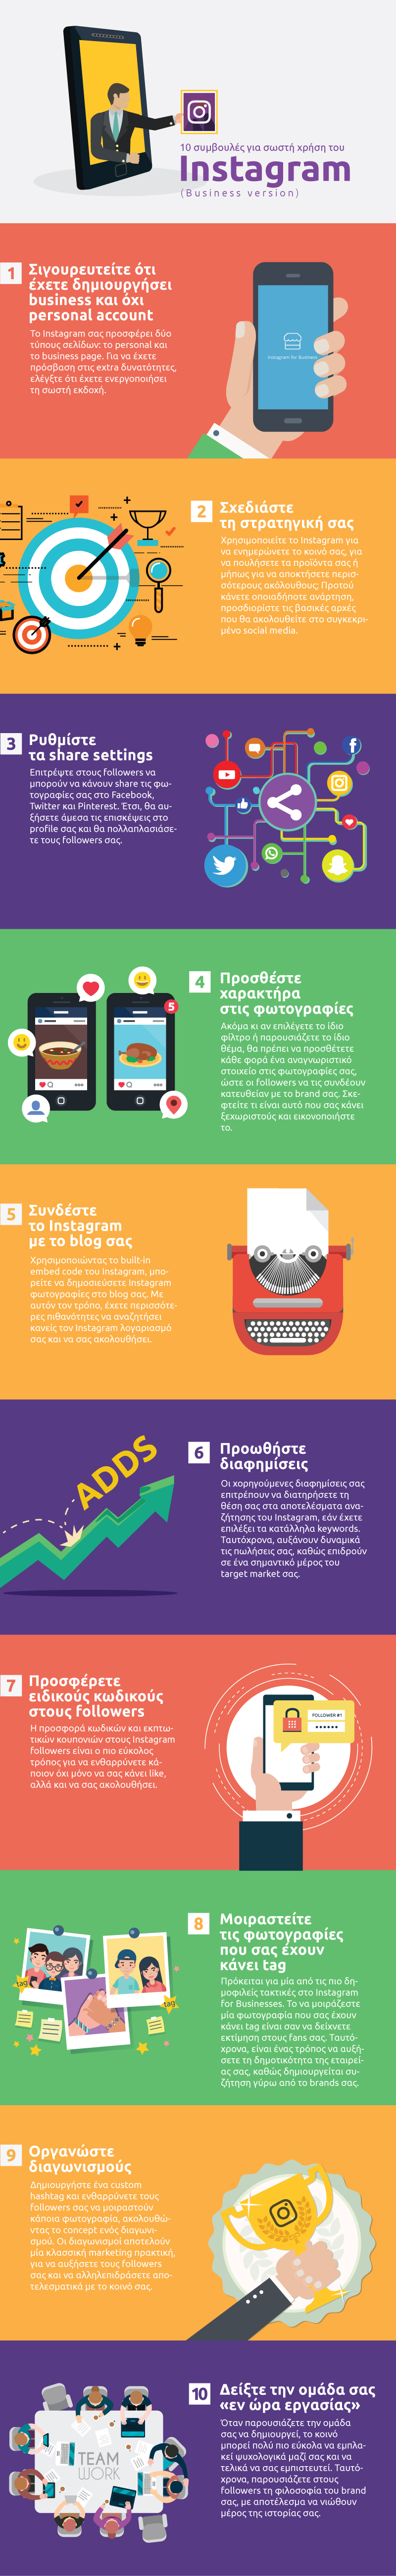 10 συμβουλές για σωστή χρήση του Instagram (Business version) | Infographic